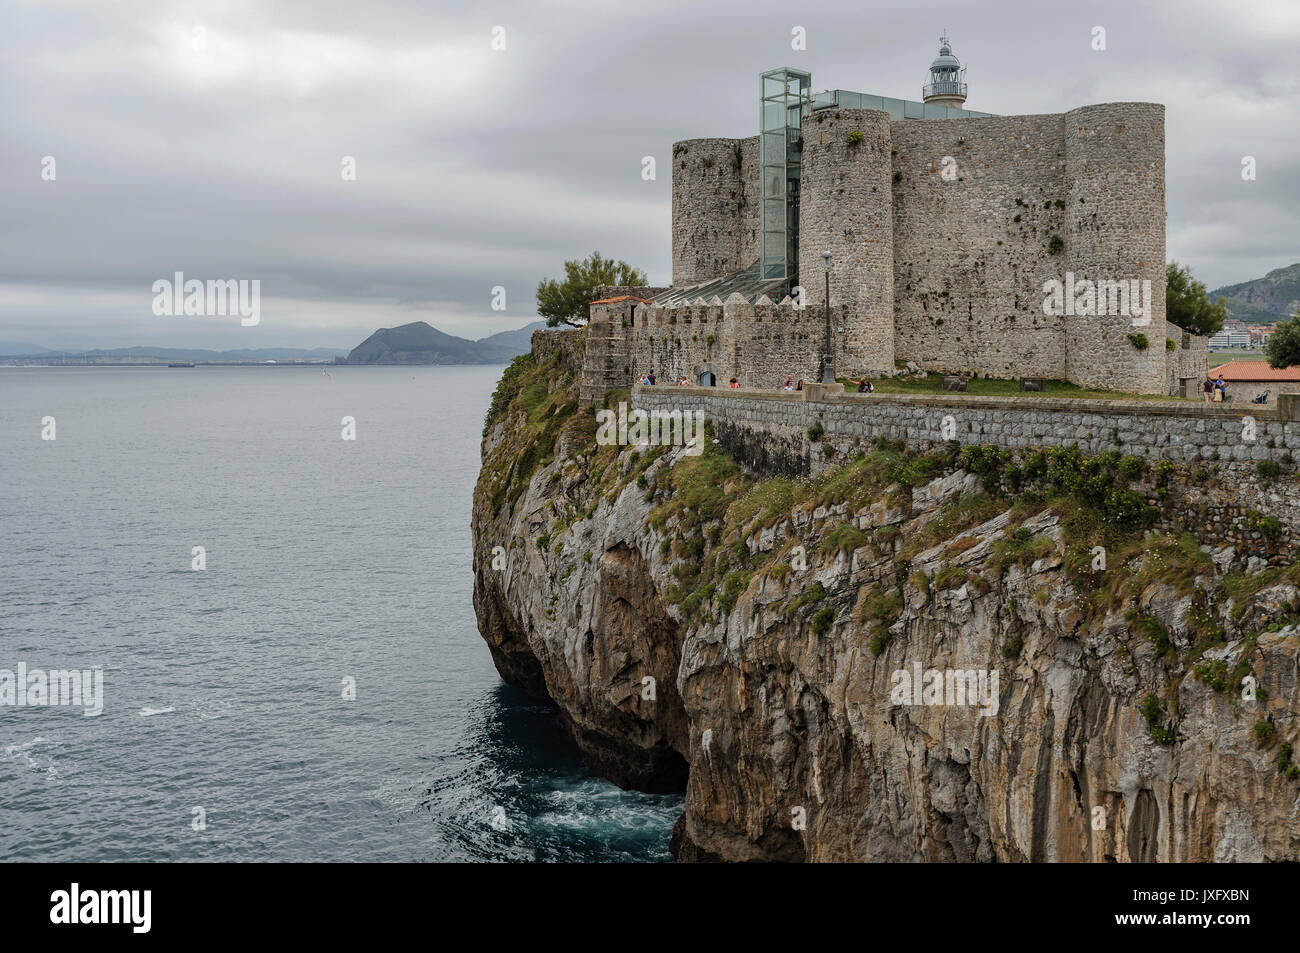 El castillo de Santa Ana es una fortaleza situada en el promontorio rocoso en Castro Urdiales, Cantabria, ESPAÑA Foto de stock